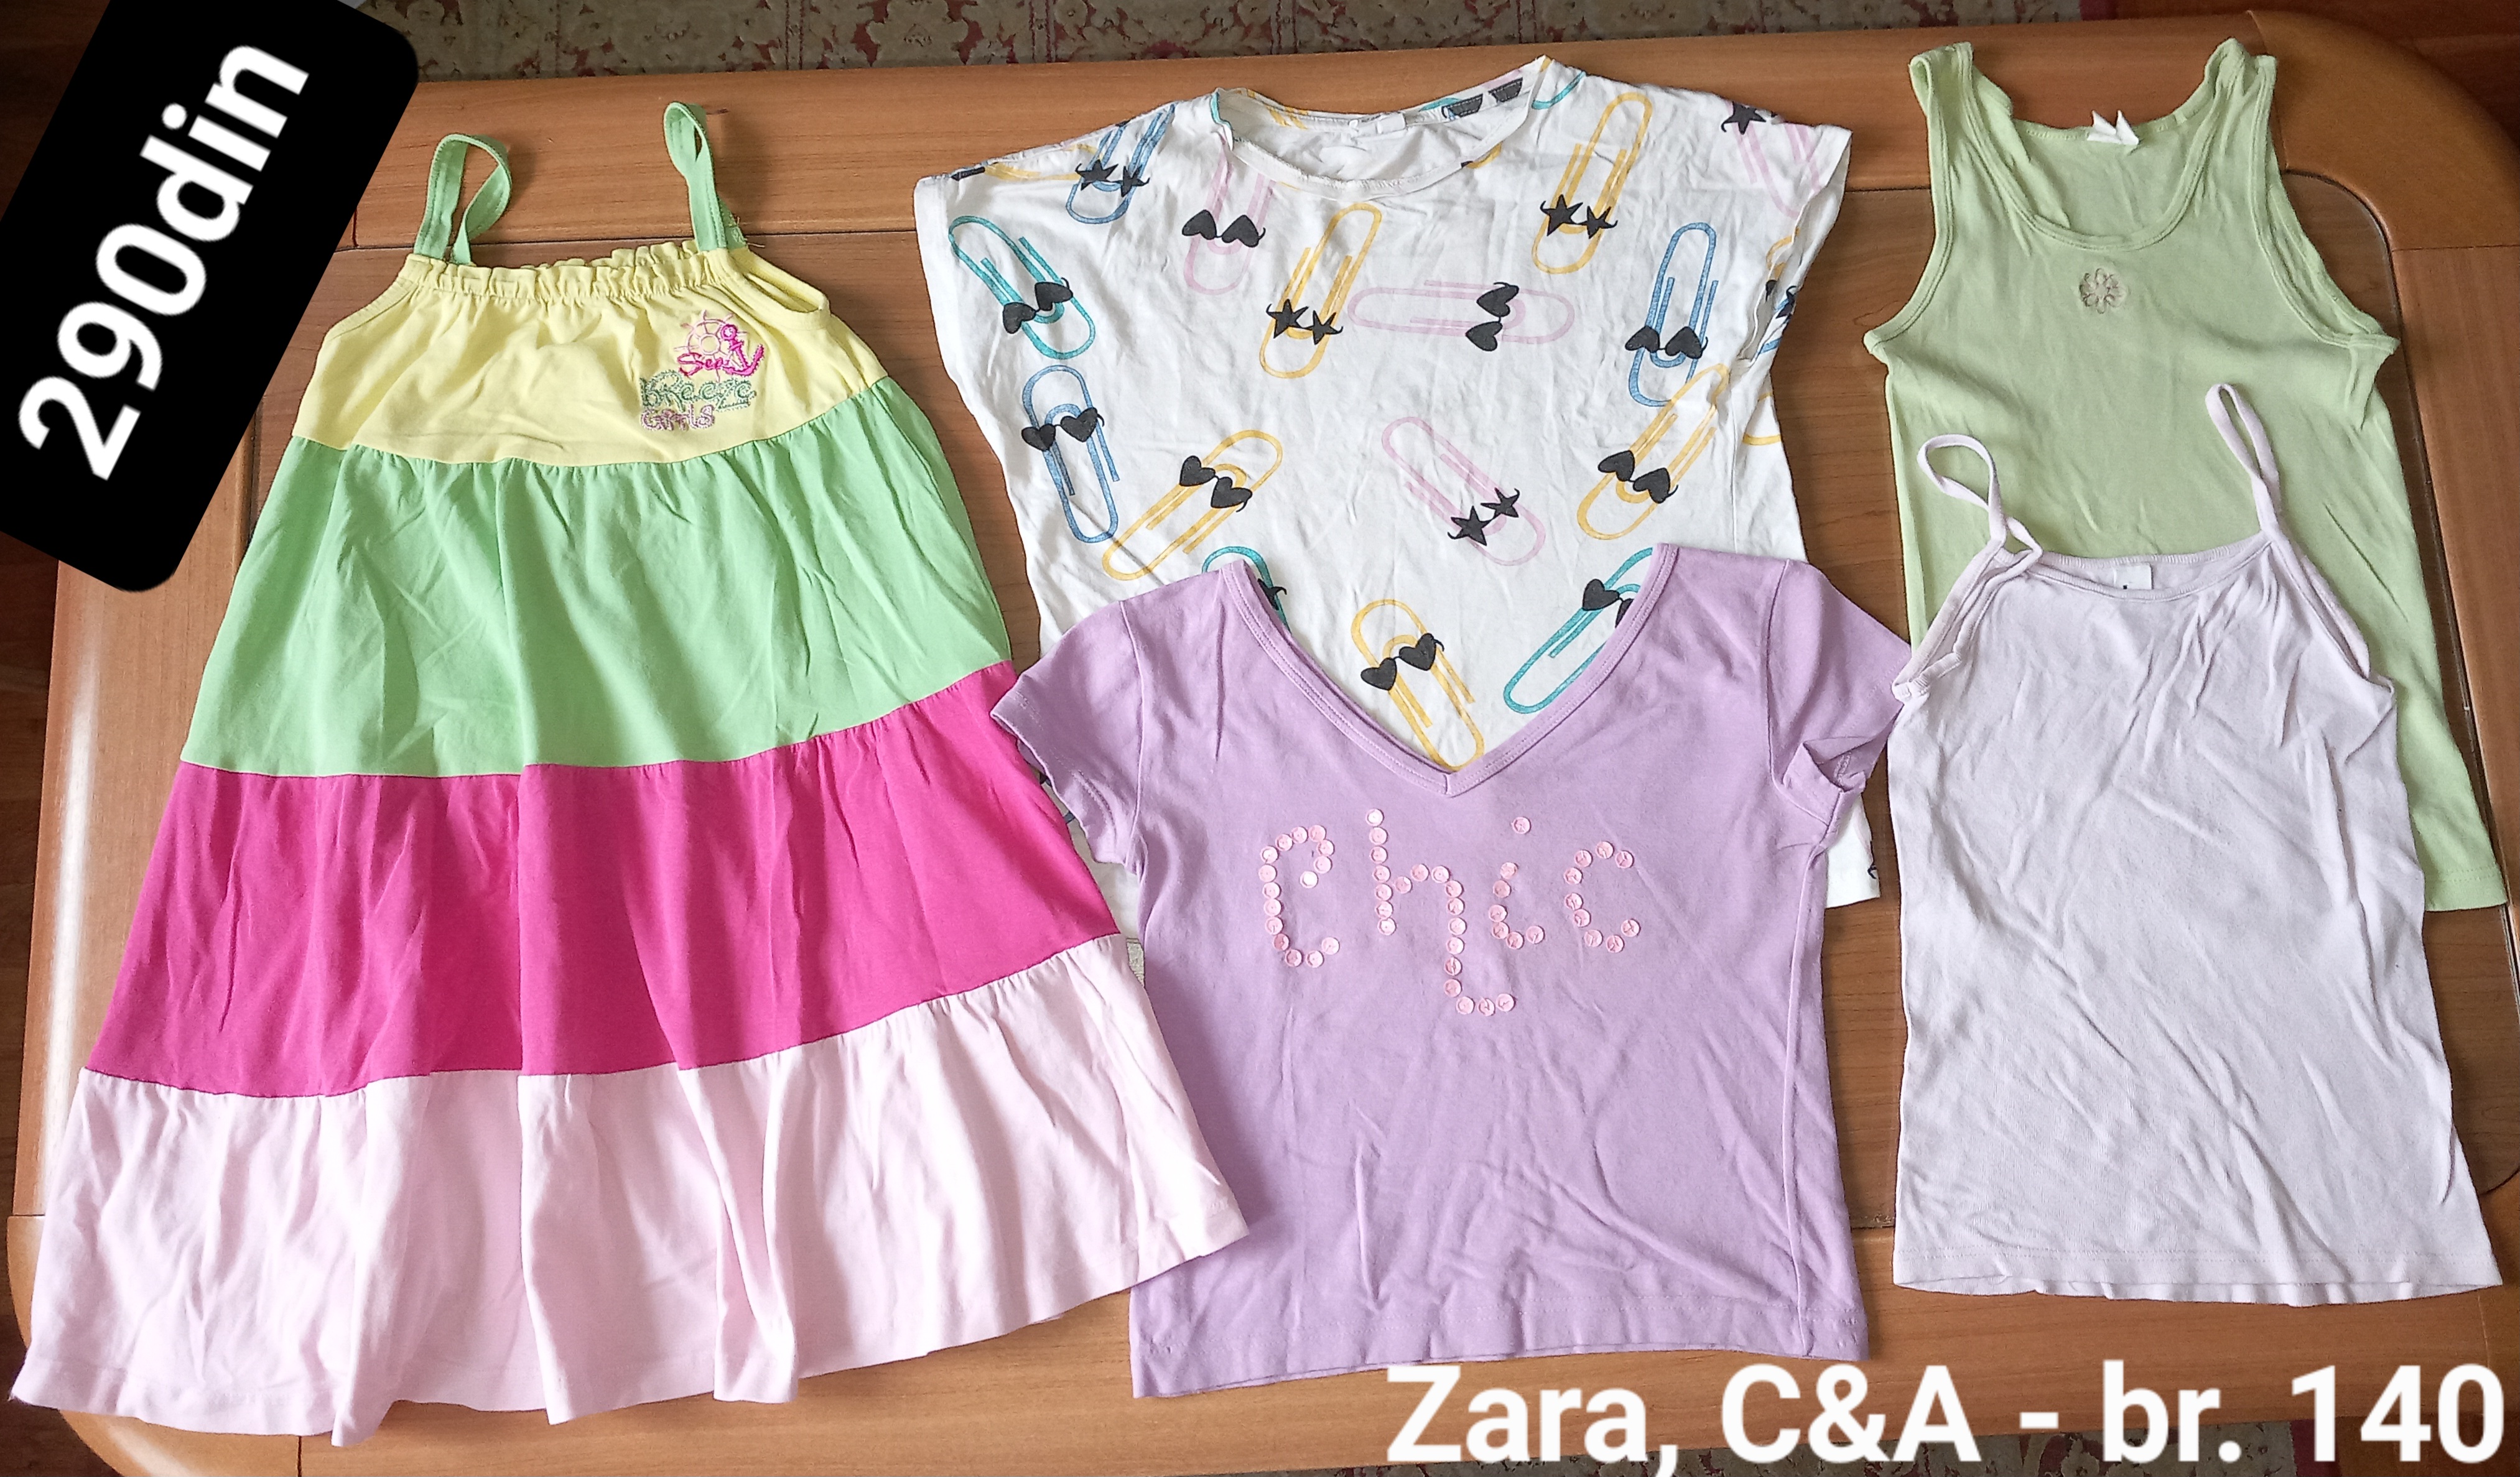 Zara C&A majice haljina za devojčice br. 140